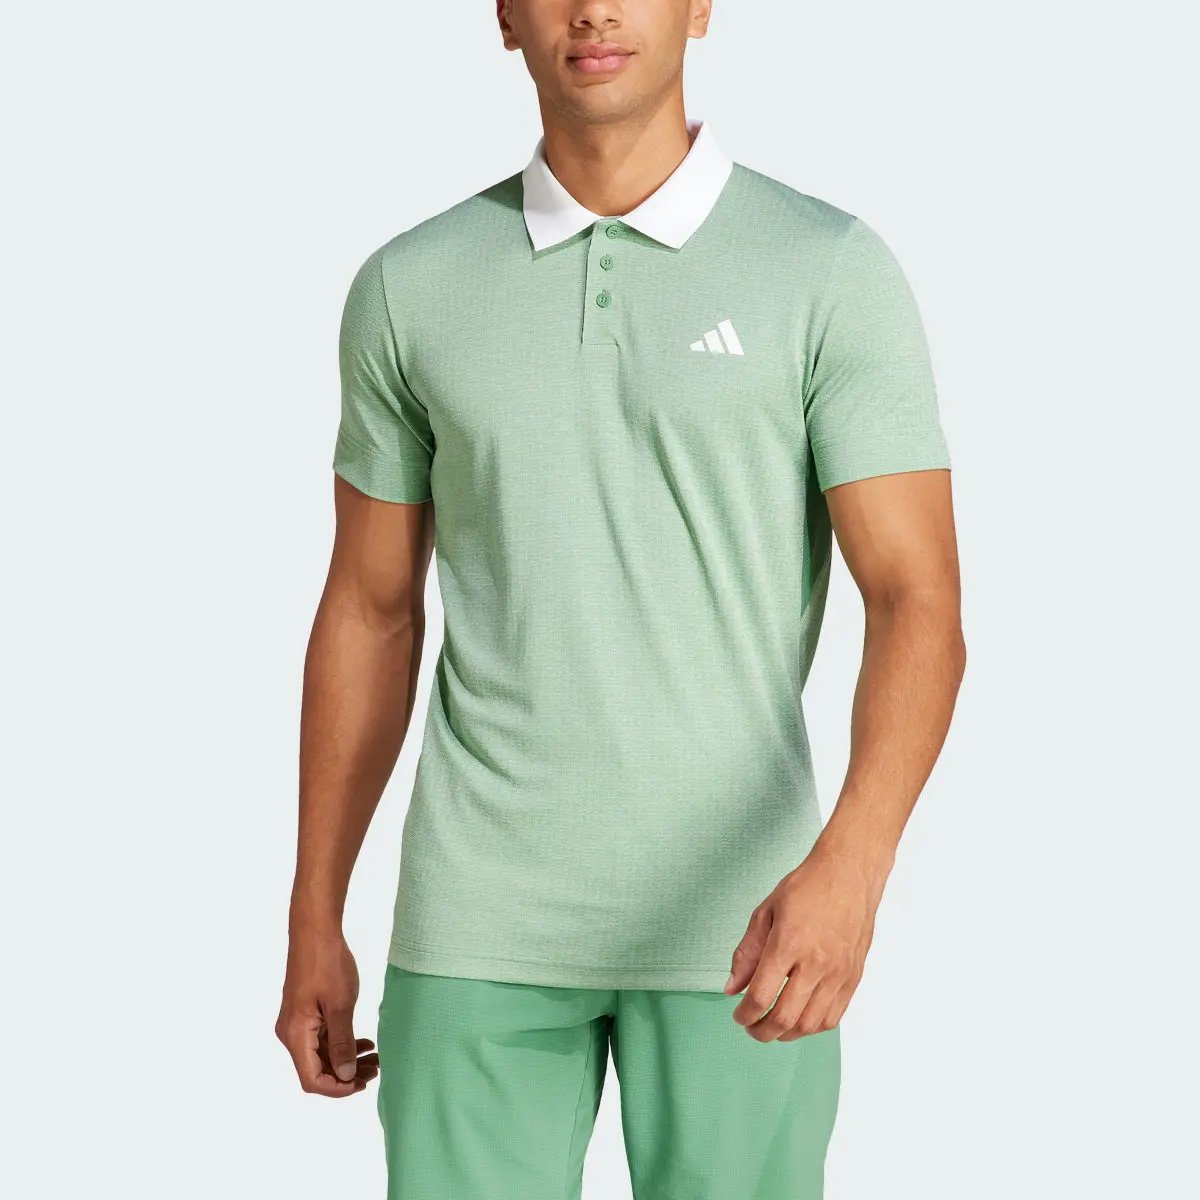 Adidas Koszulka Tennis FreeLift Polo. 1